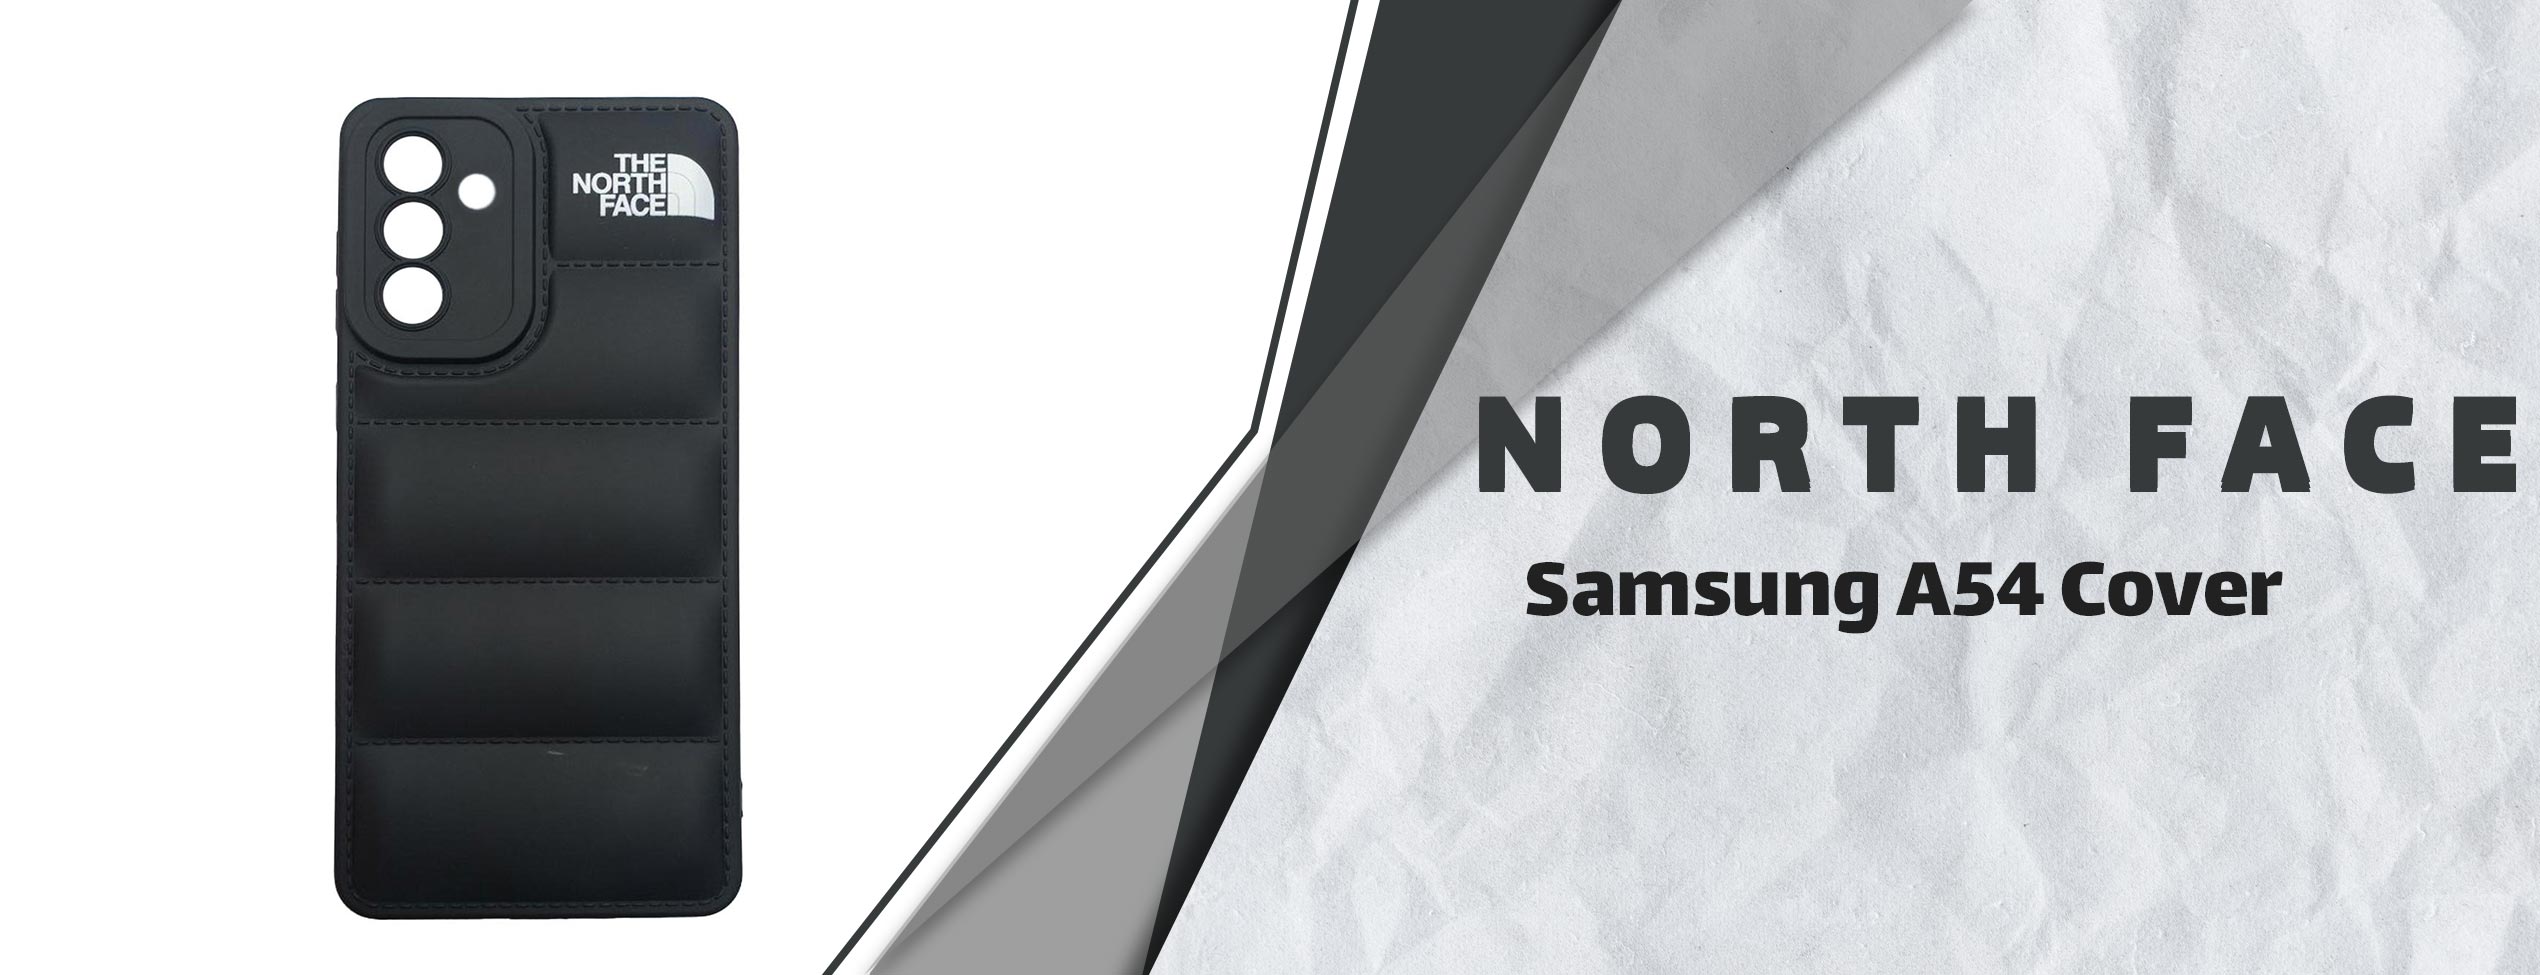 قاب موبایل پافر The North Face سامسونگ Samsung A54